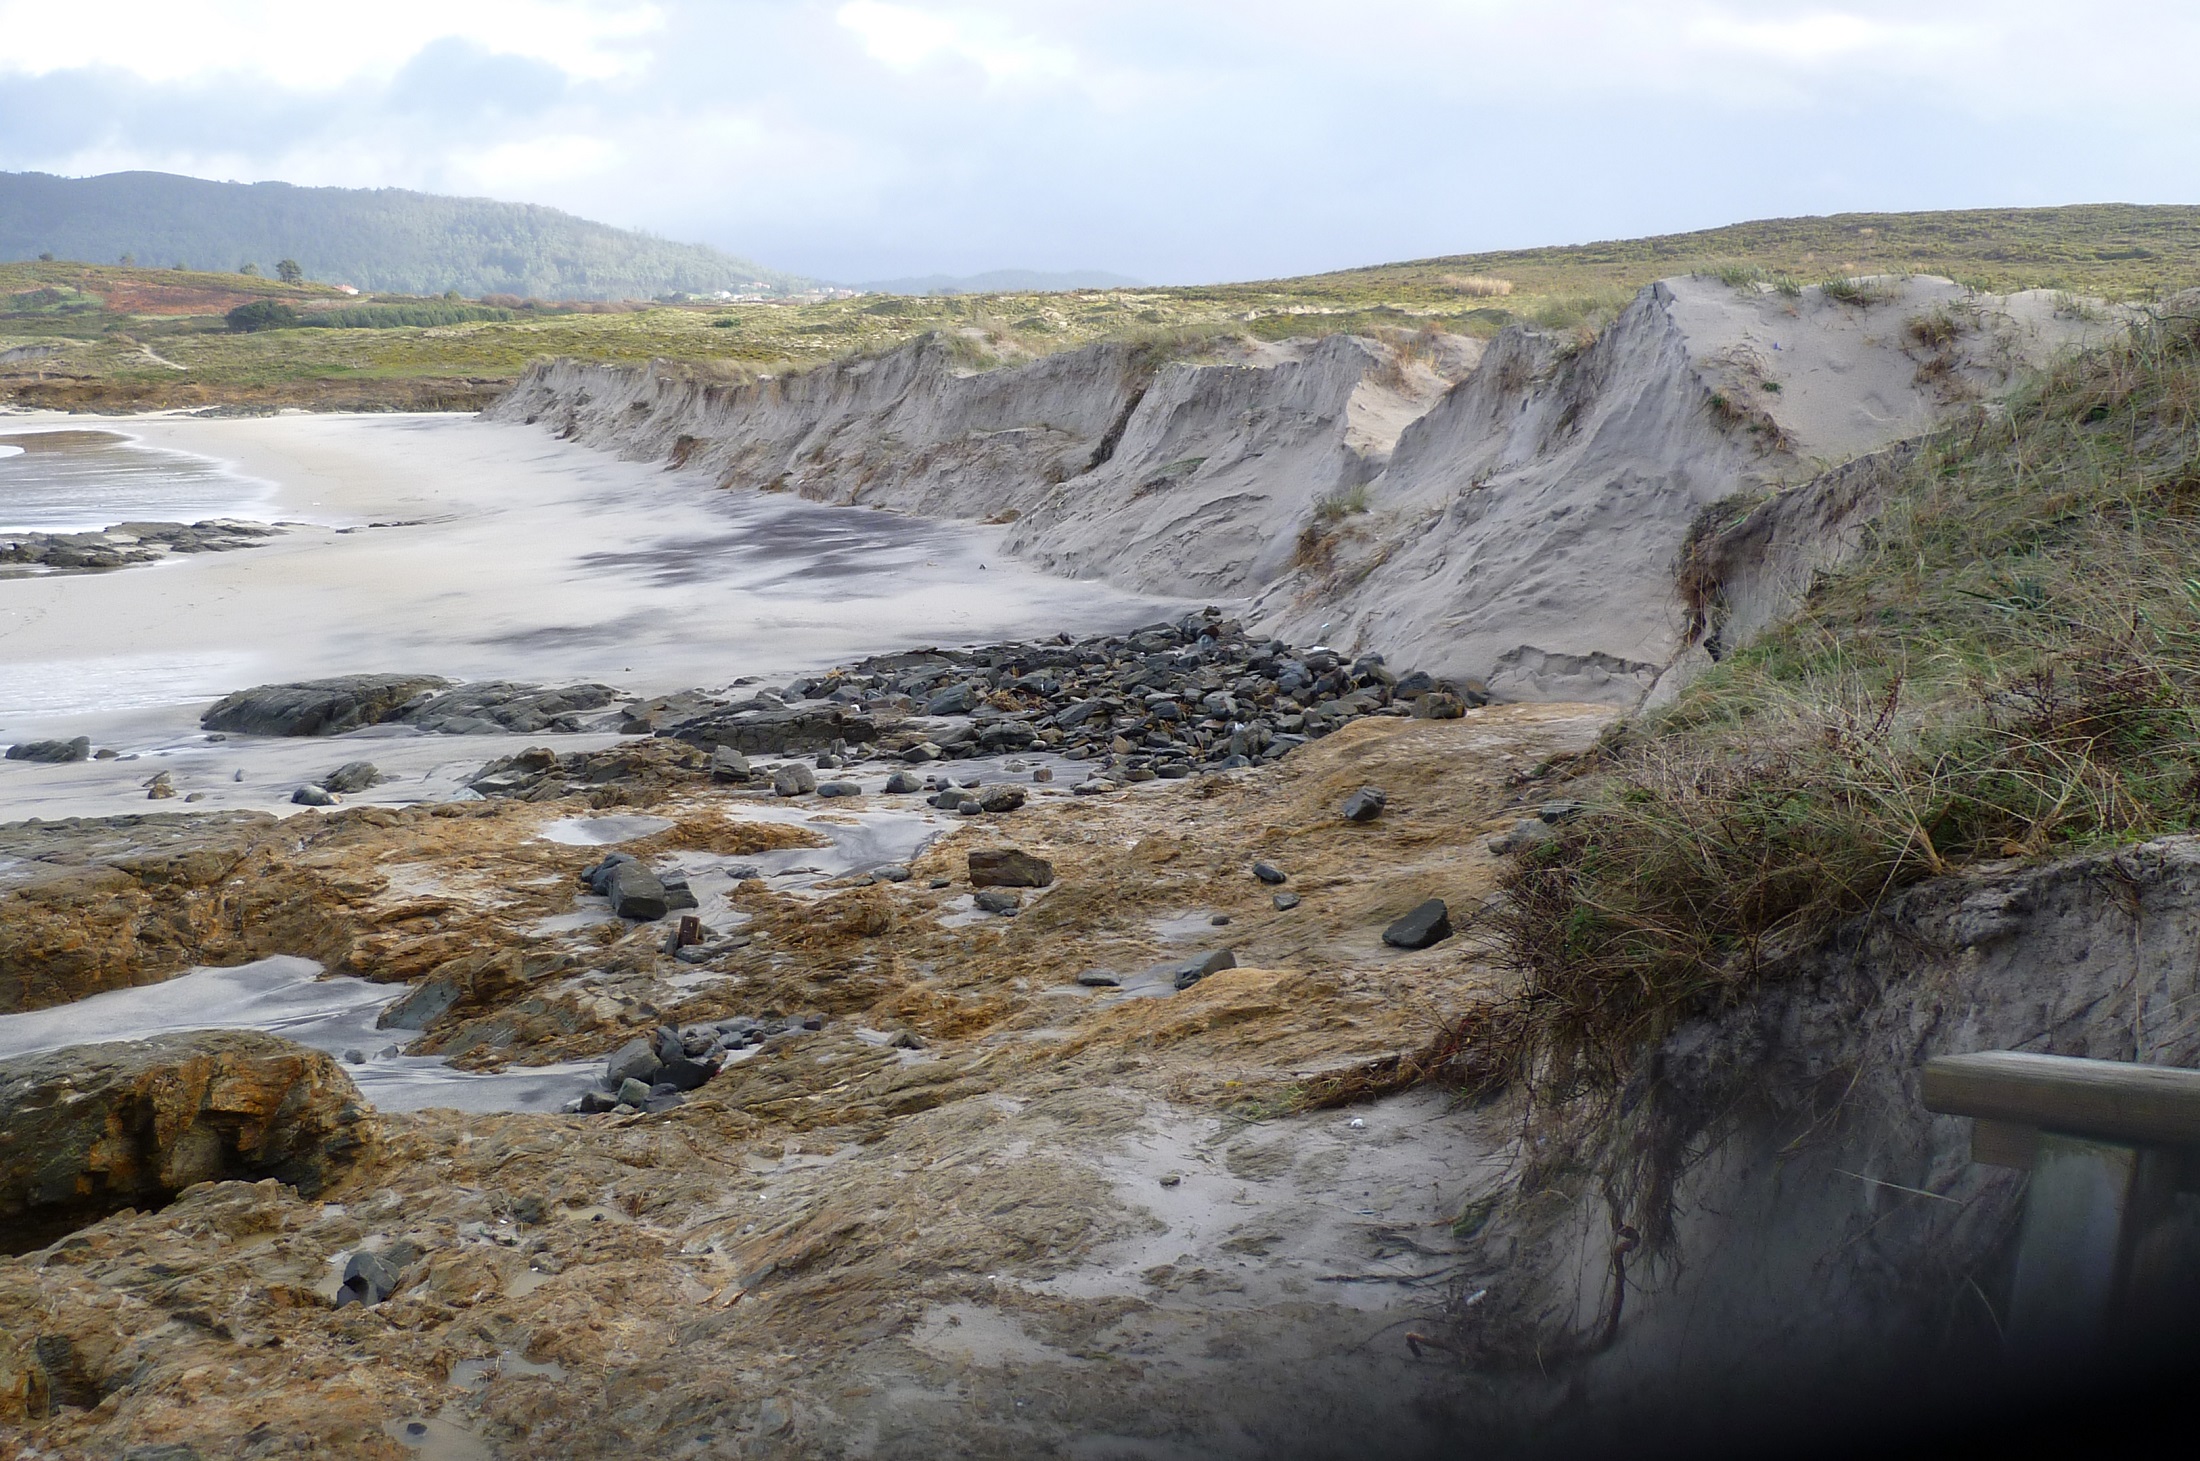 Foto 6: Primera fotografía tomada tras la ciclogénesis, en enero de 2014. Pueden verse restos de posibles edificaciones hoy desaparecidas. (Playa de Santa Comba)